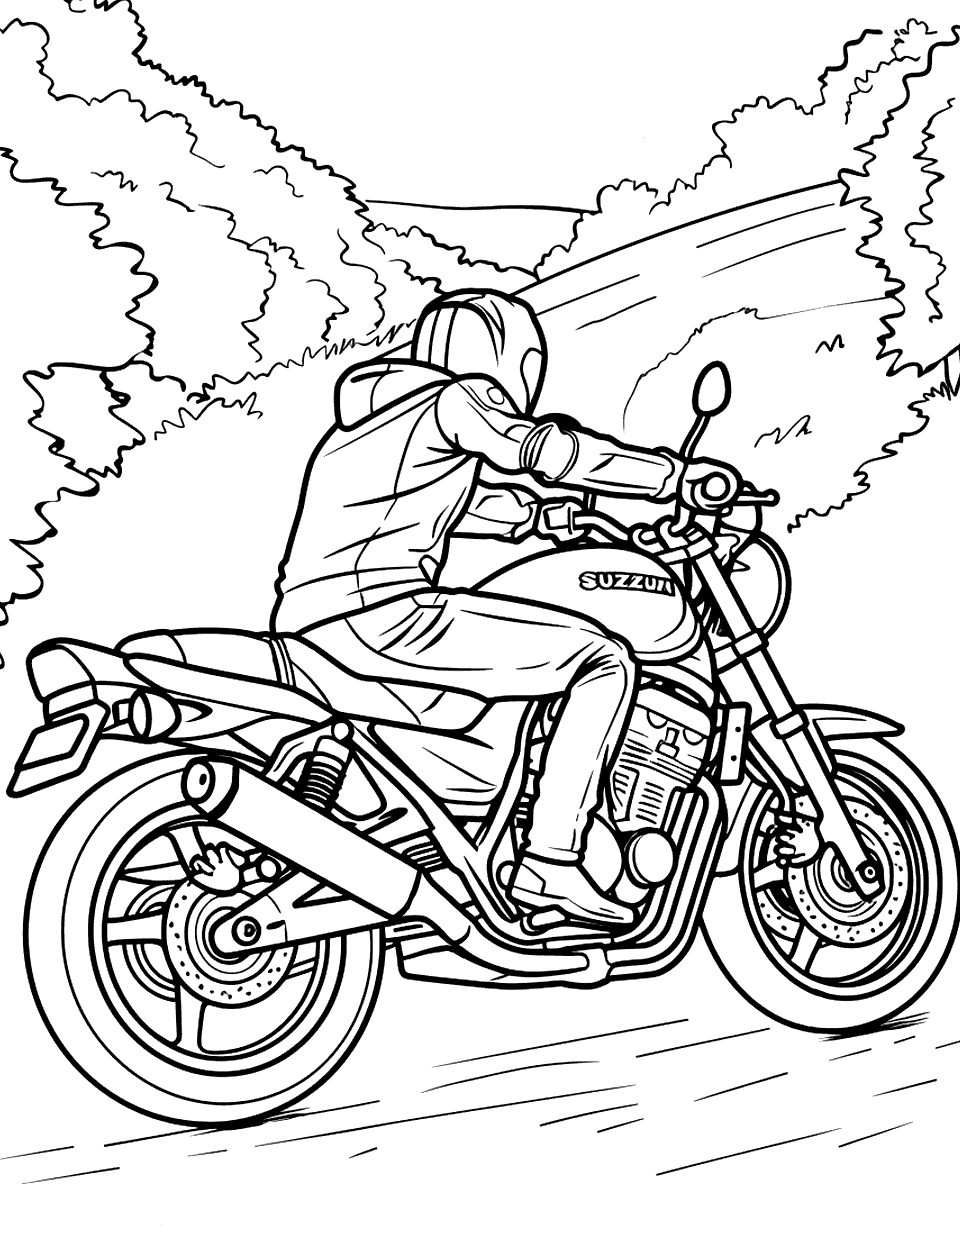 Suzuki Motorcycle Ride Coloring Page - A person riding a Suzuki motorcycle through a scenic countryside road.